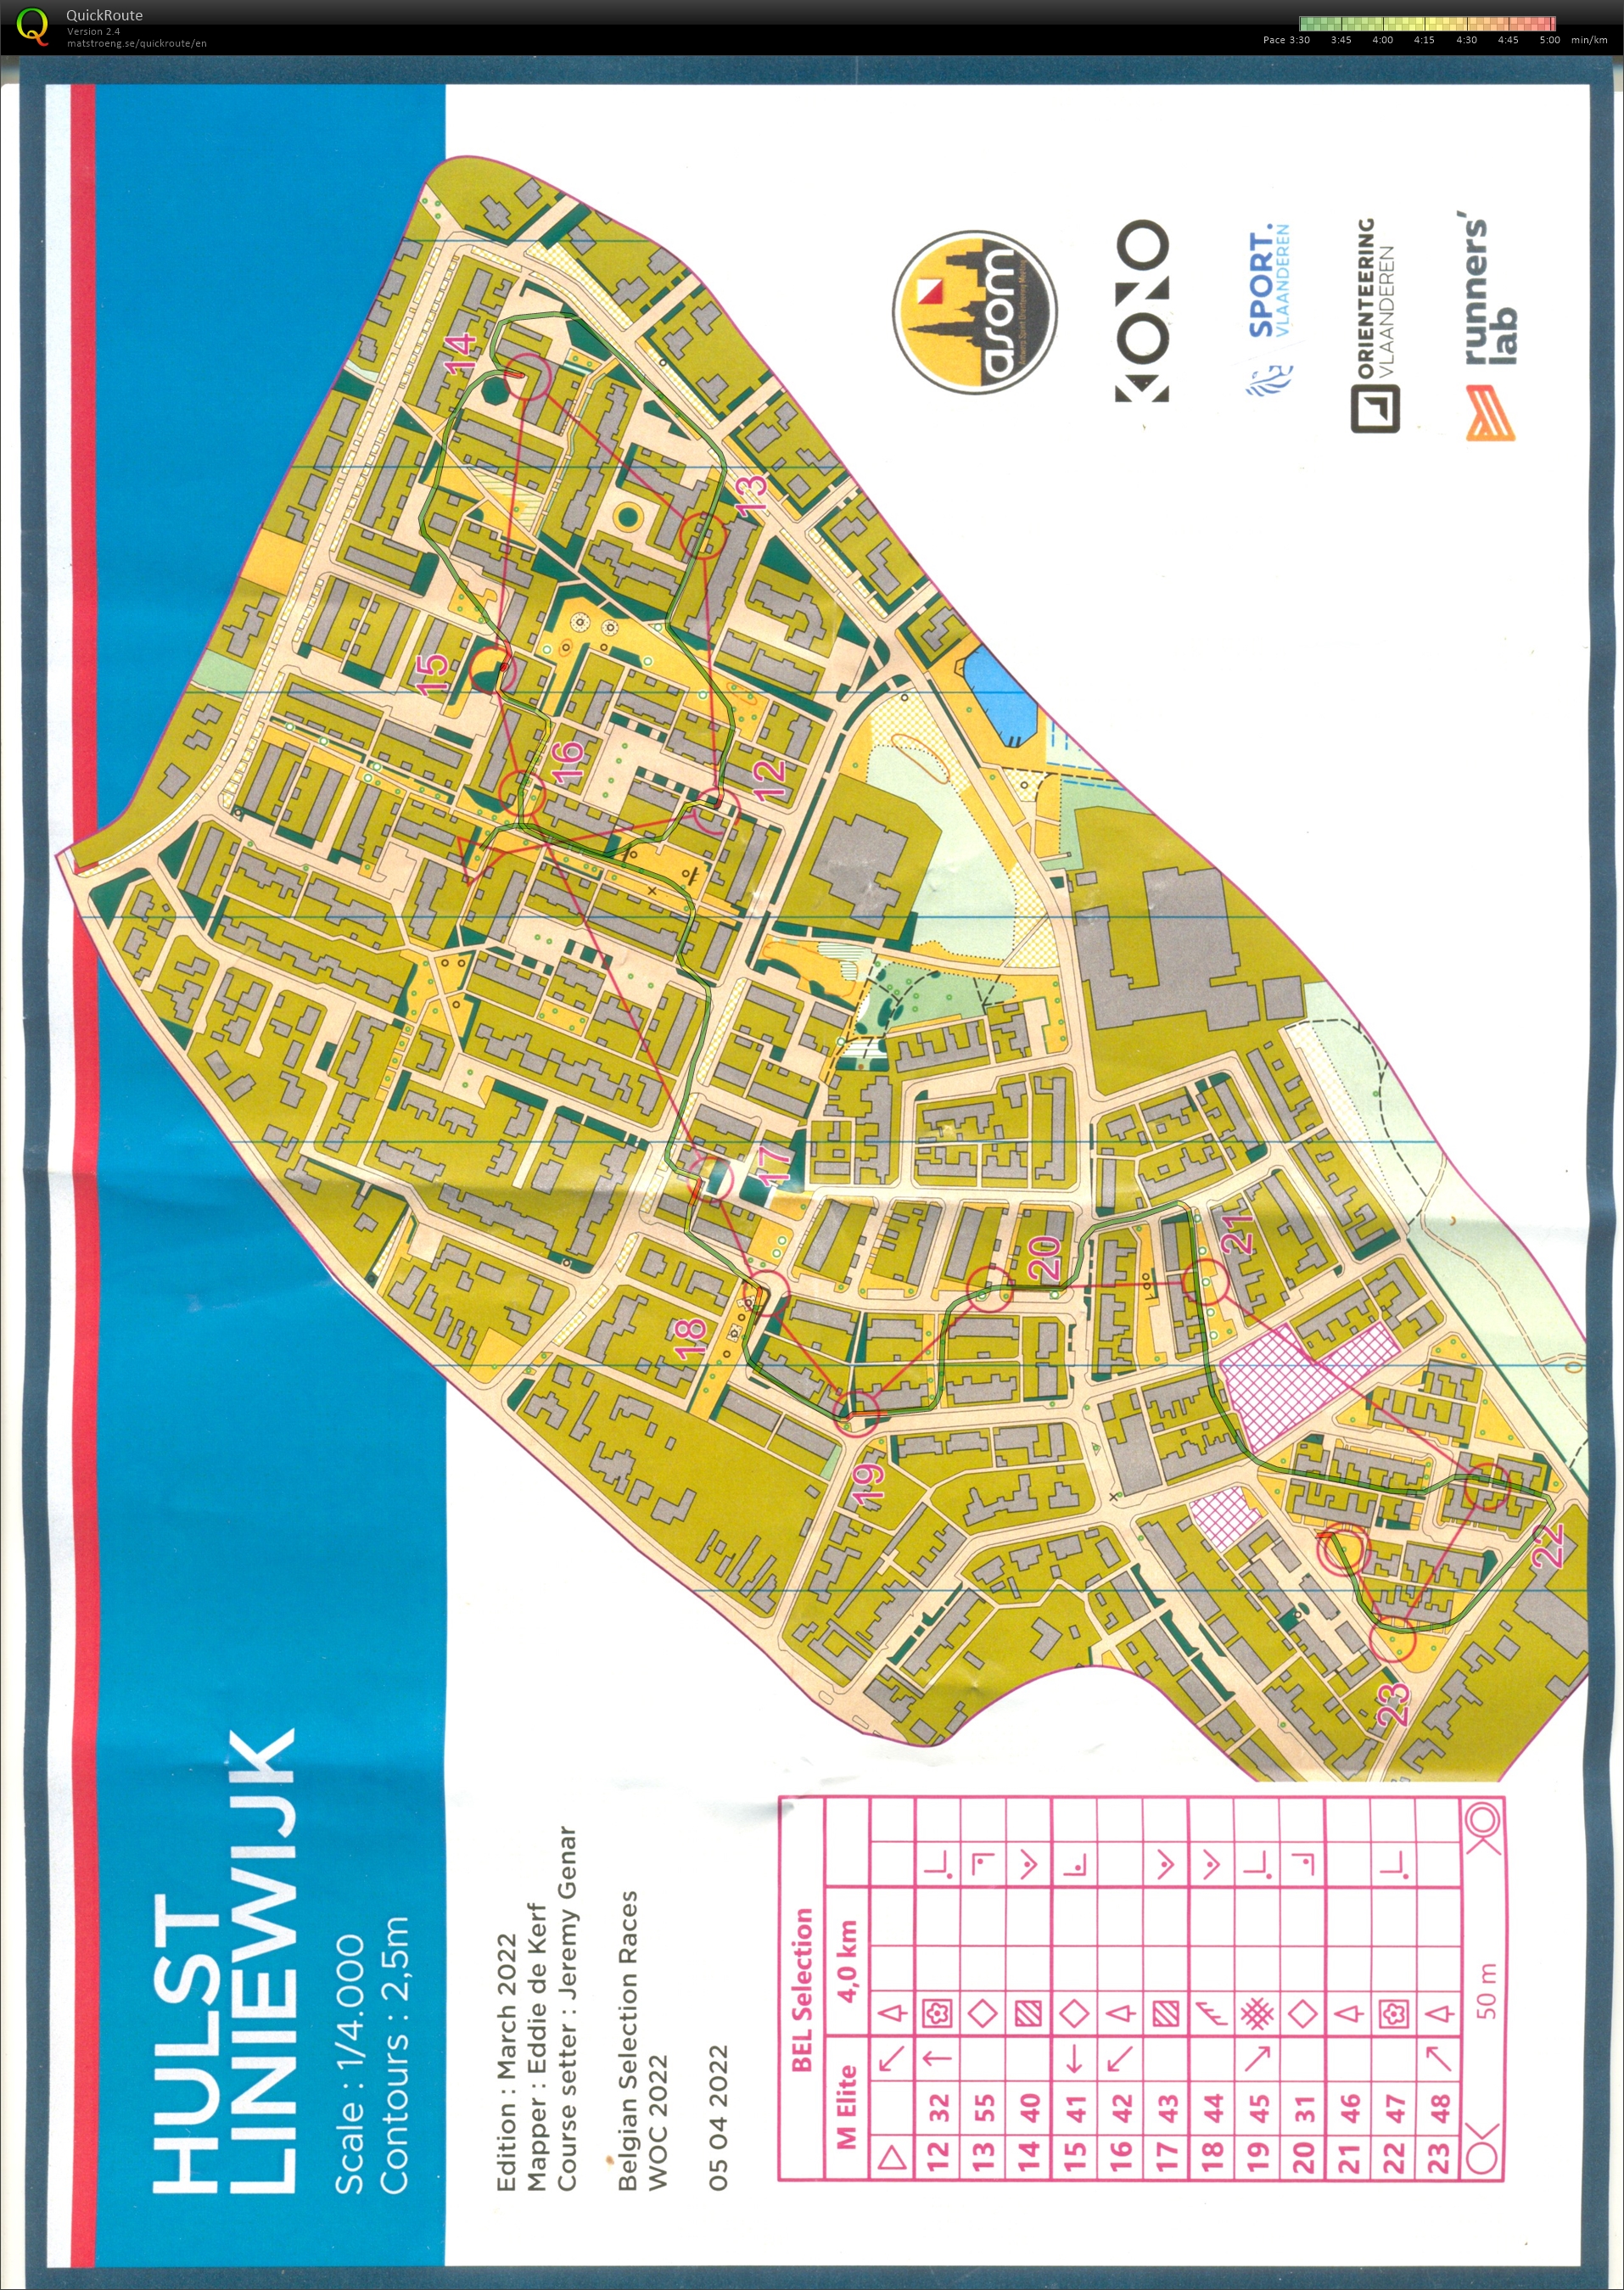 Belgian Sprint selection race 2: Hulst Liniewijk part 2 (05/04/2022)